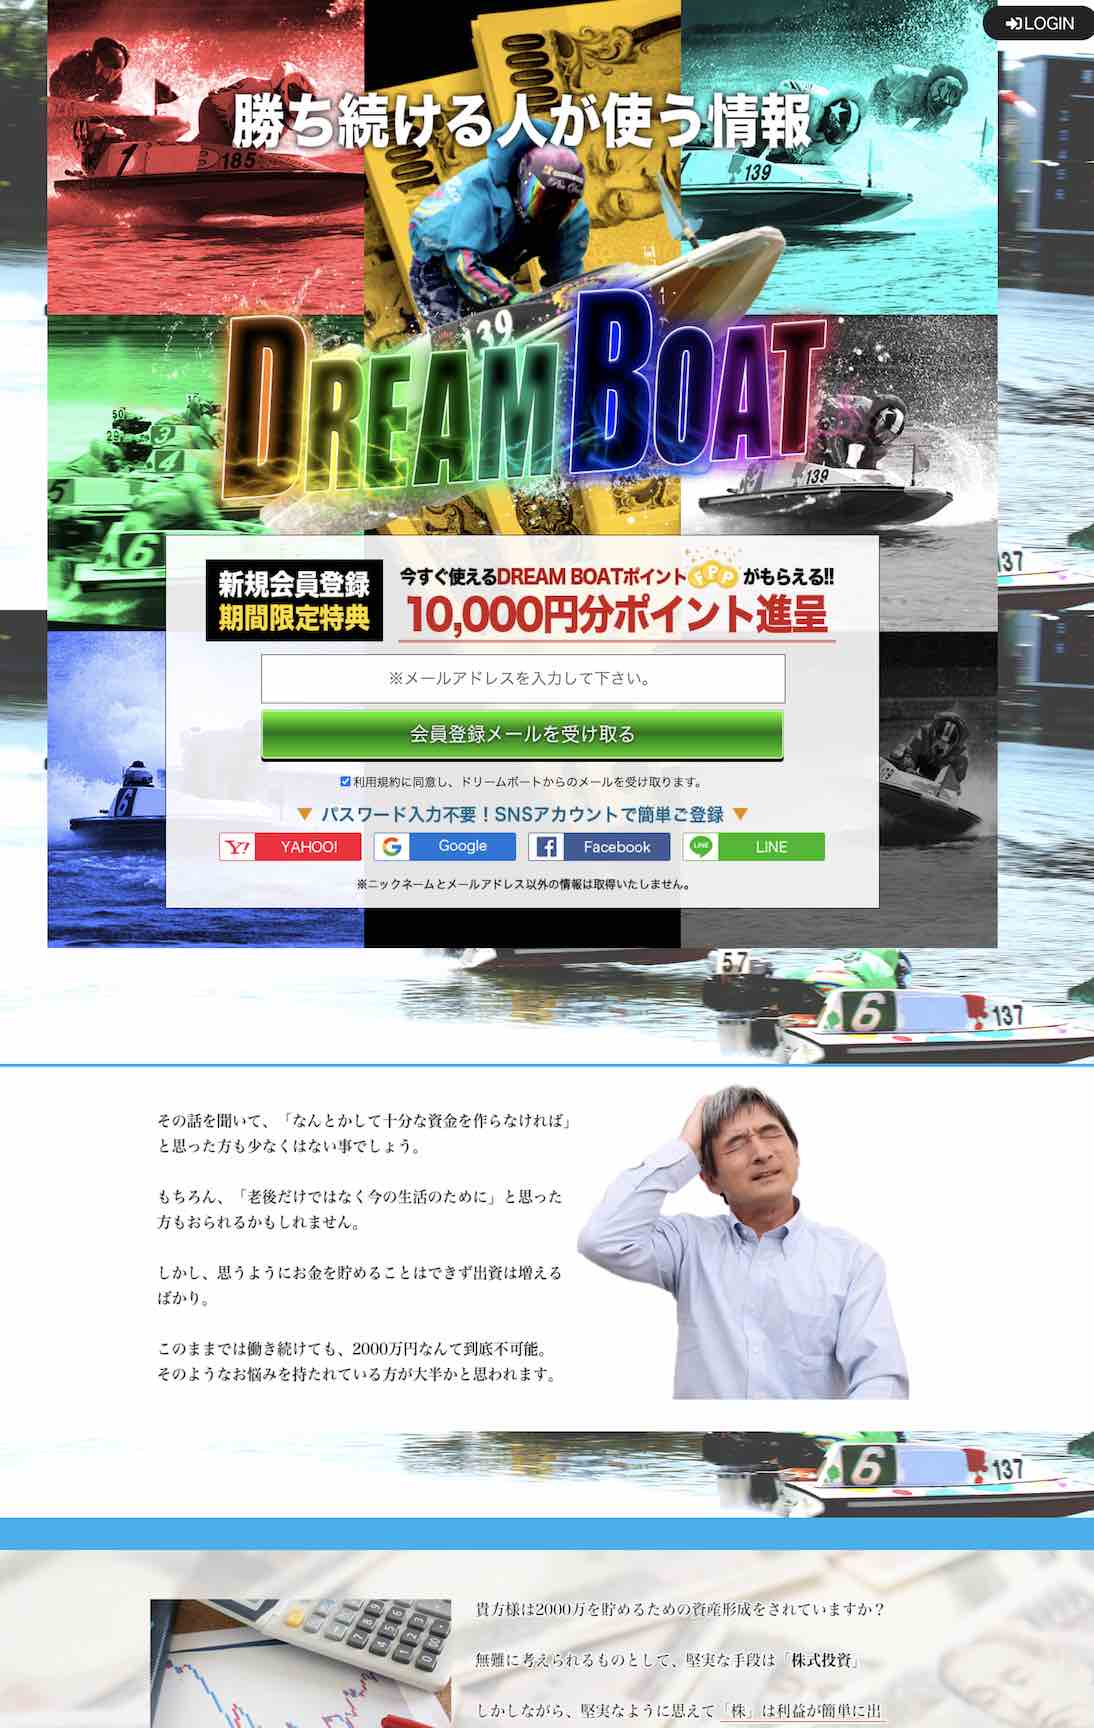 競艇・ボートレース予想サイトの「ドリームボート」について検証